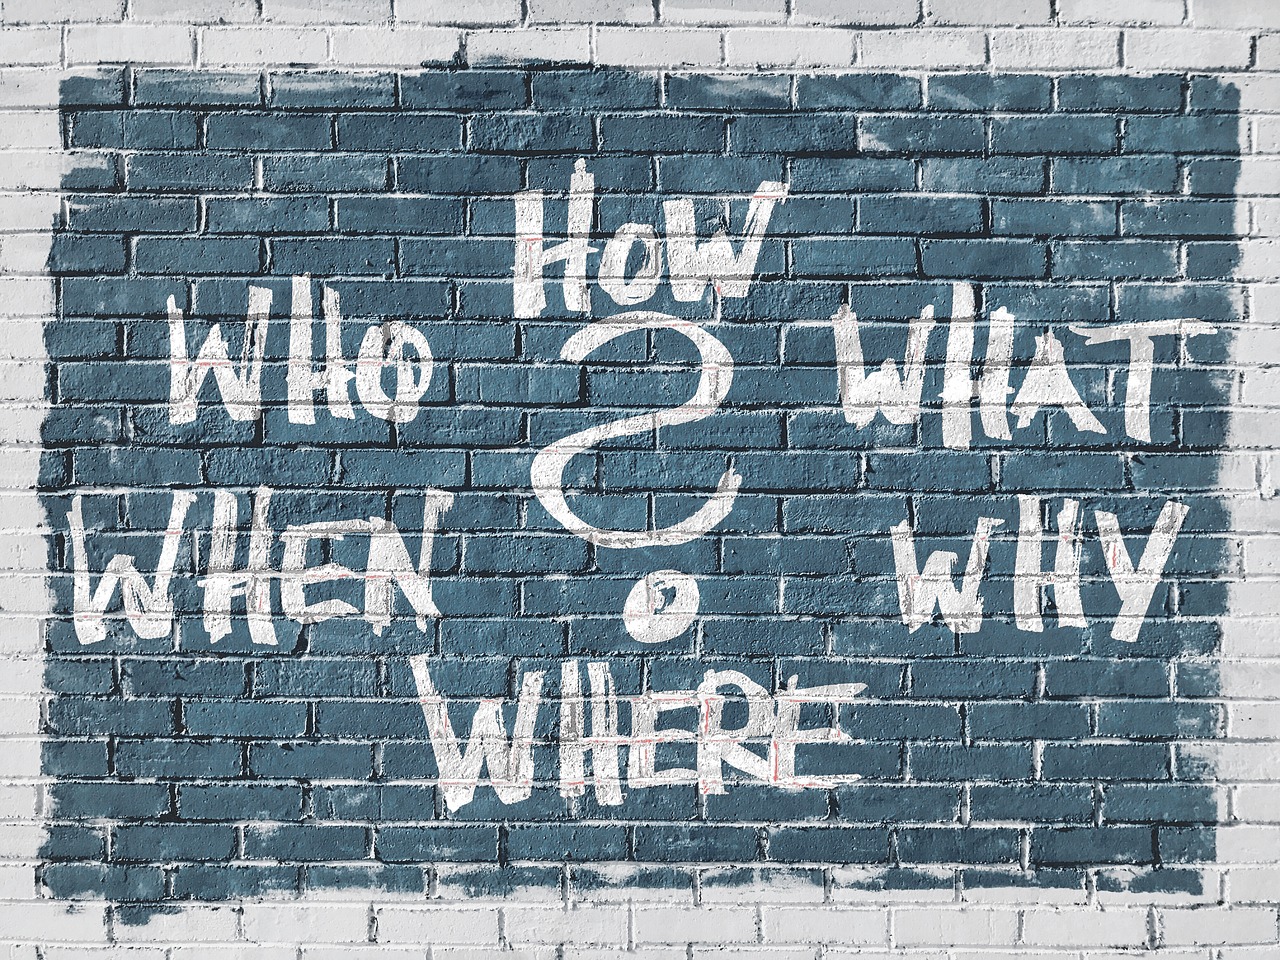 शब्द कौन, कैसे, क्या, क्यों, कहाँ, और कब केंद्र में एक प्रश्न चिह्न के साथ एक ईंट की दीवार पर चित्रित किया गया है।